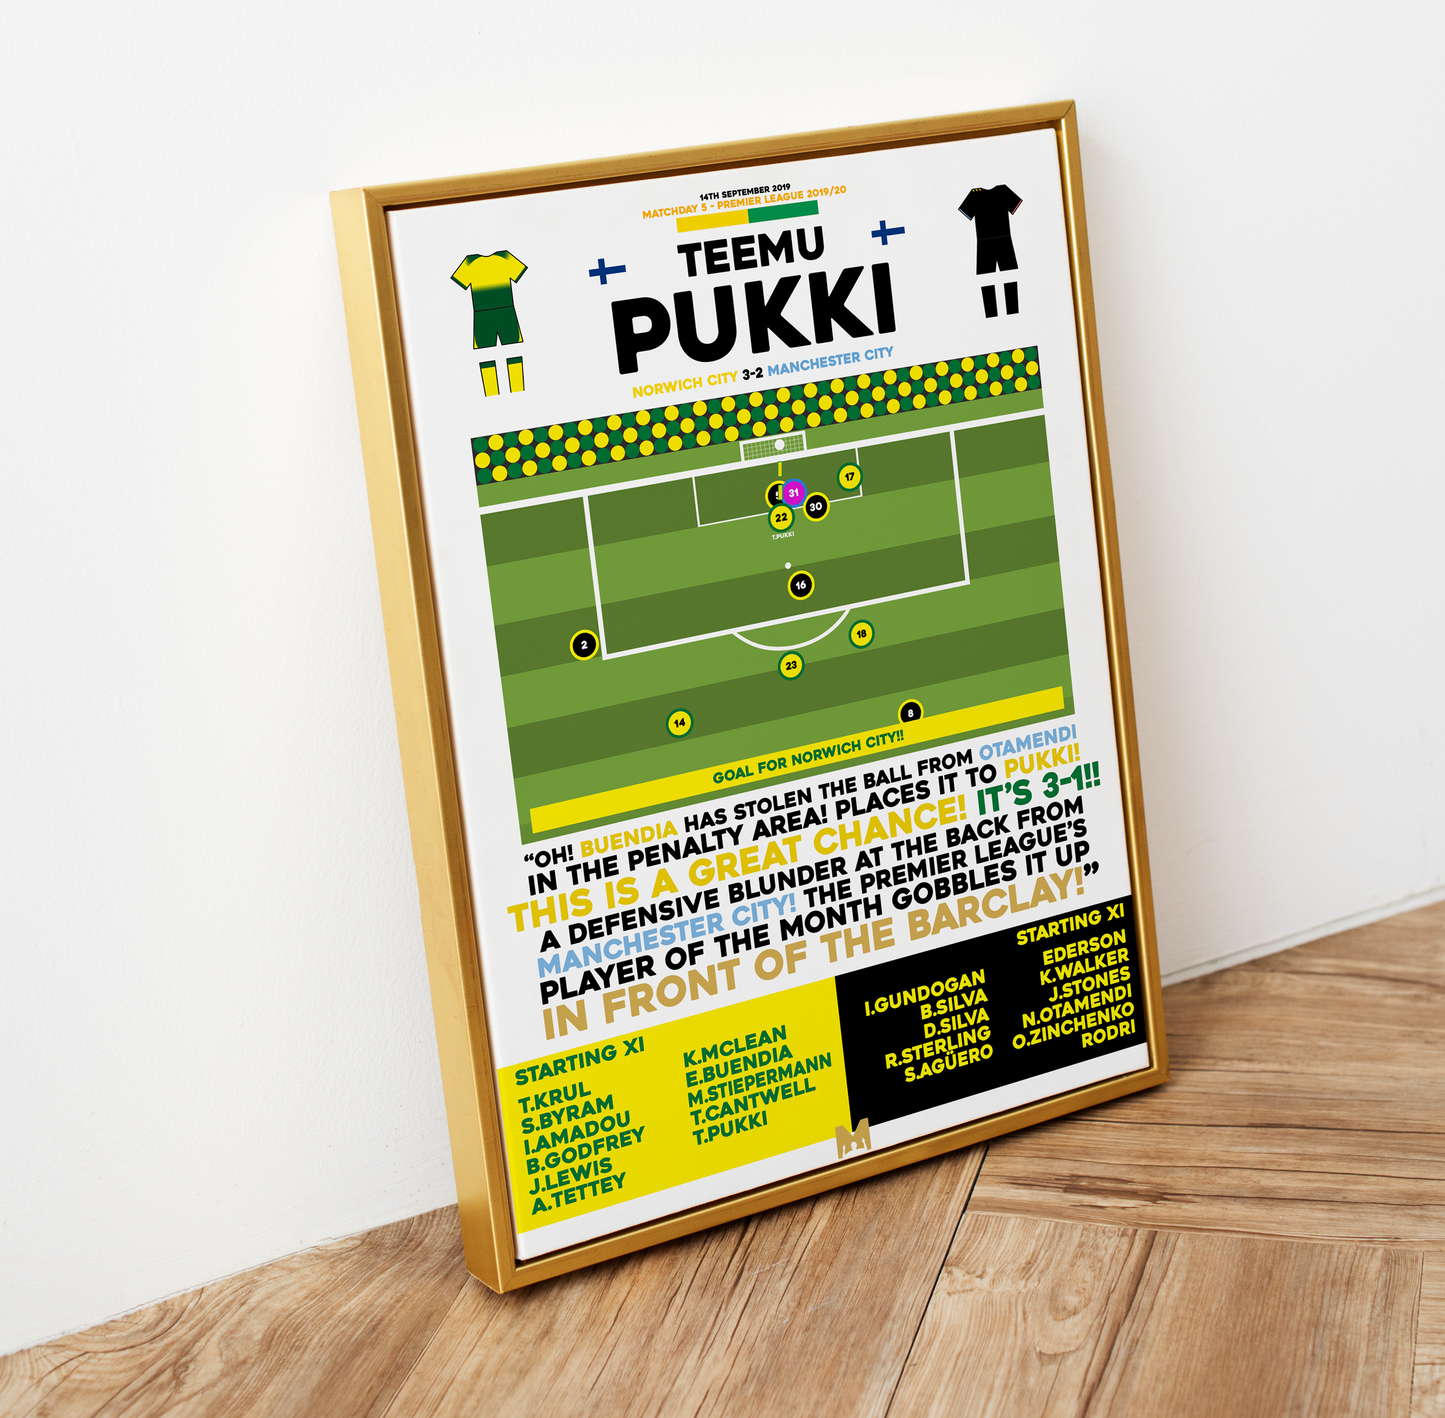 Teemu Pukki Goal vs Manchester City - Premier League 2019/20 - Norwich City